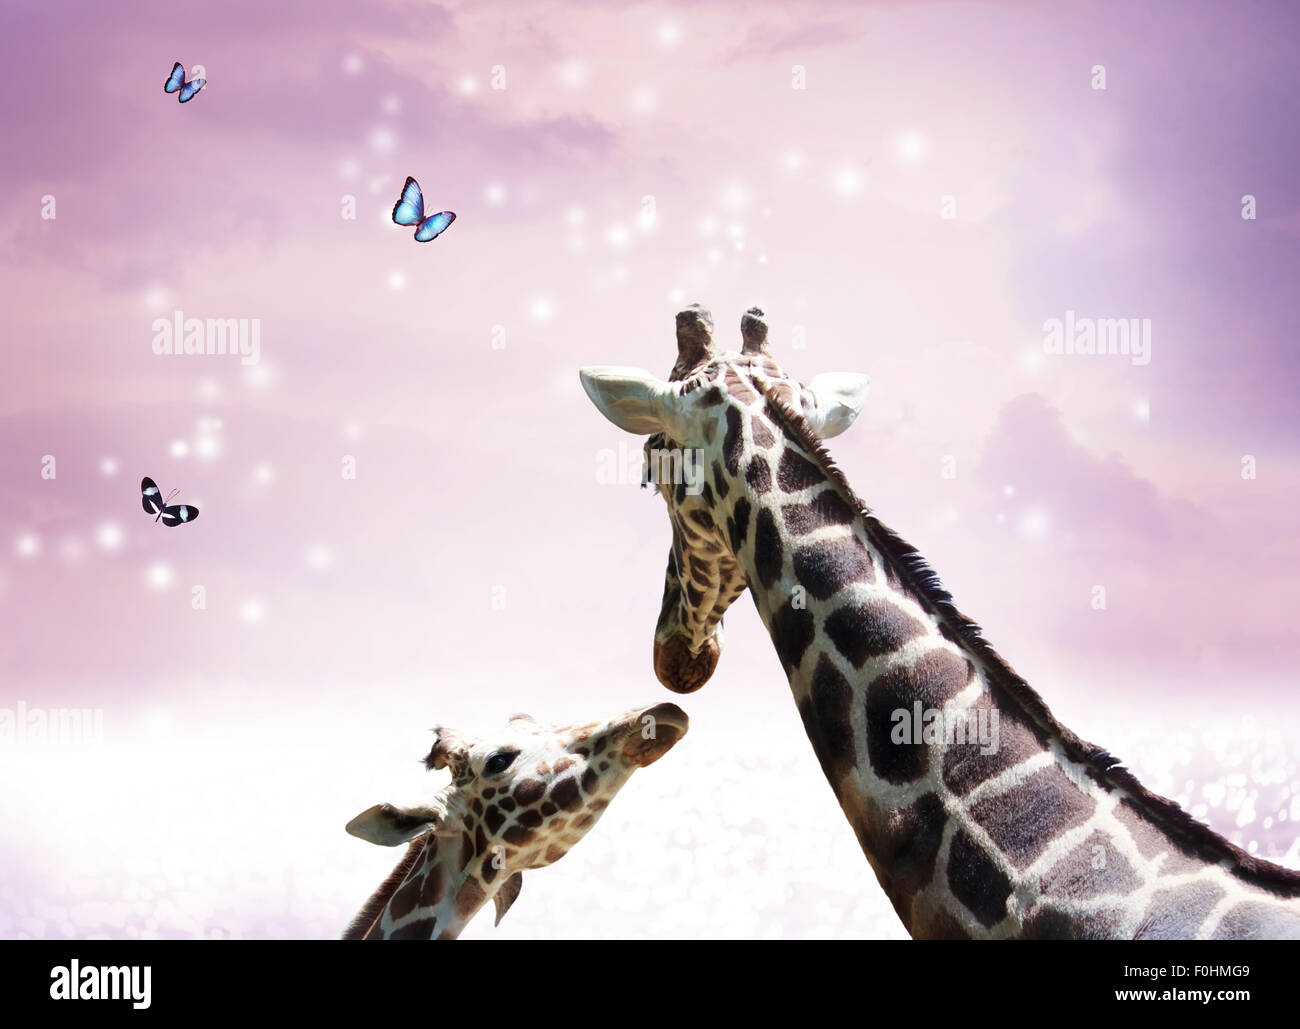 Deux girafes, la mère et l'enfant dans l'amitié ou l'amour thème libre au crépuscule Banque D'Images